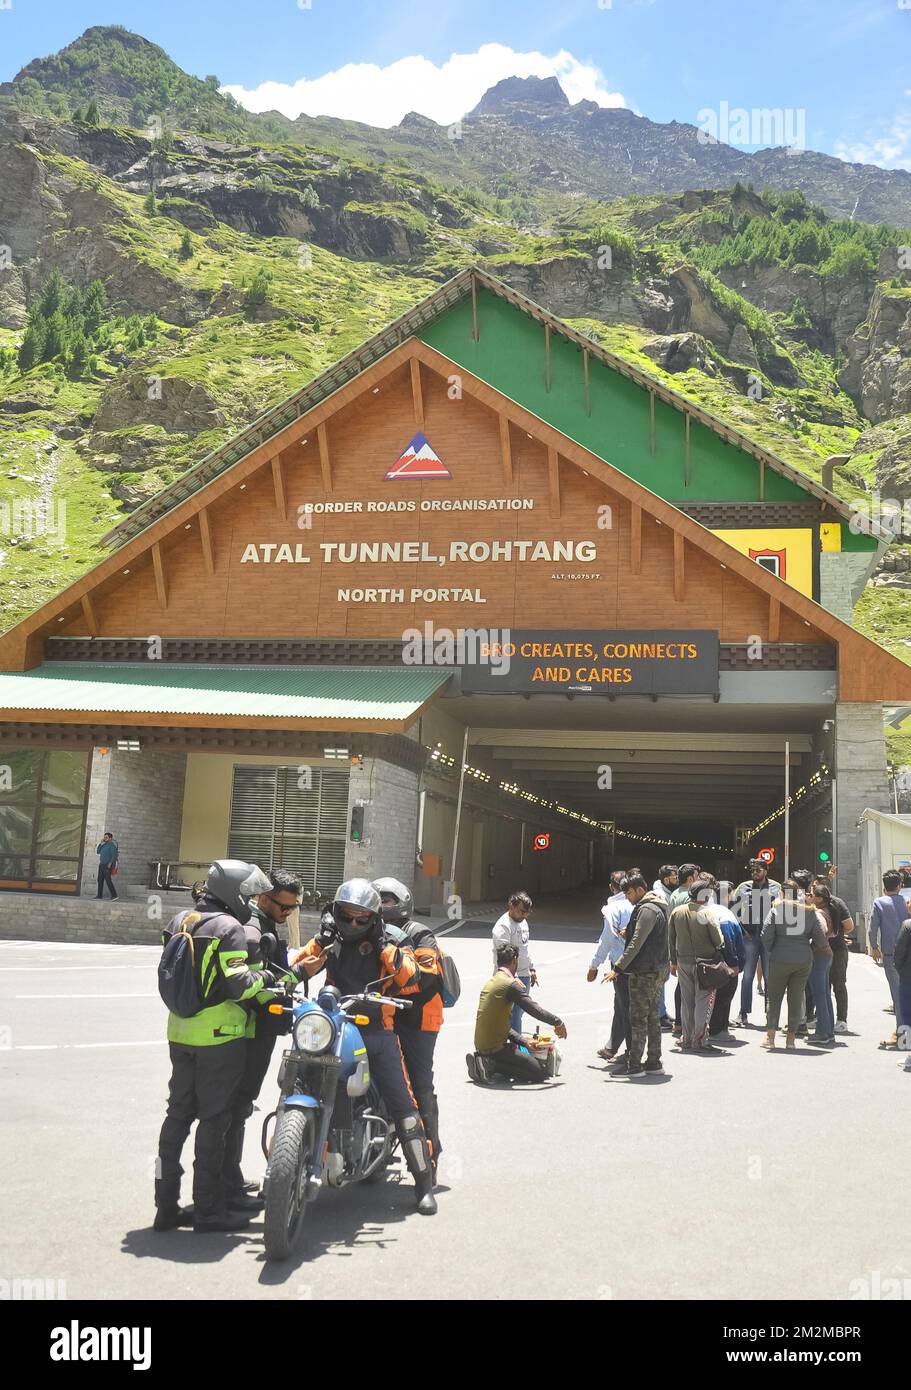 Rohtang, Manali, Himachal Pradesh, India - 25 2022 luglio: Visita turistica nel tunnel Atal (tunnel Rohtang) in estate. Il tunnel autostradale a tubo singolo più alto del mondo, a oltre 10.000 metri. Foto Stock